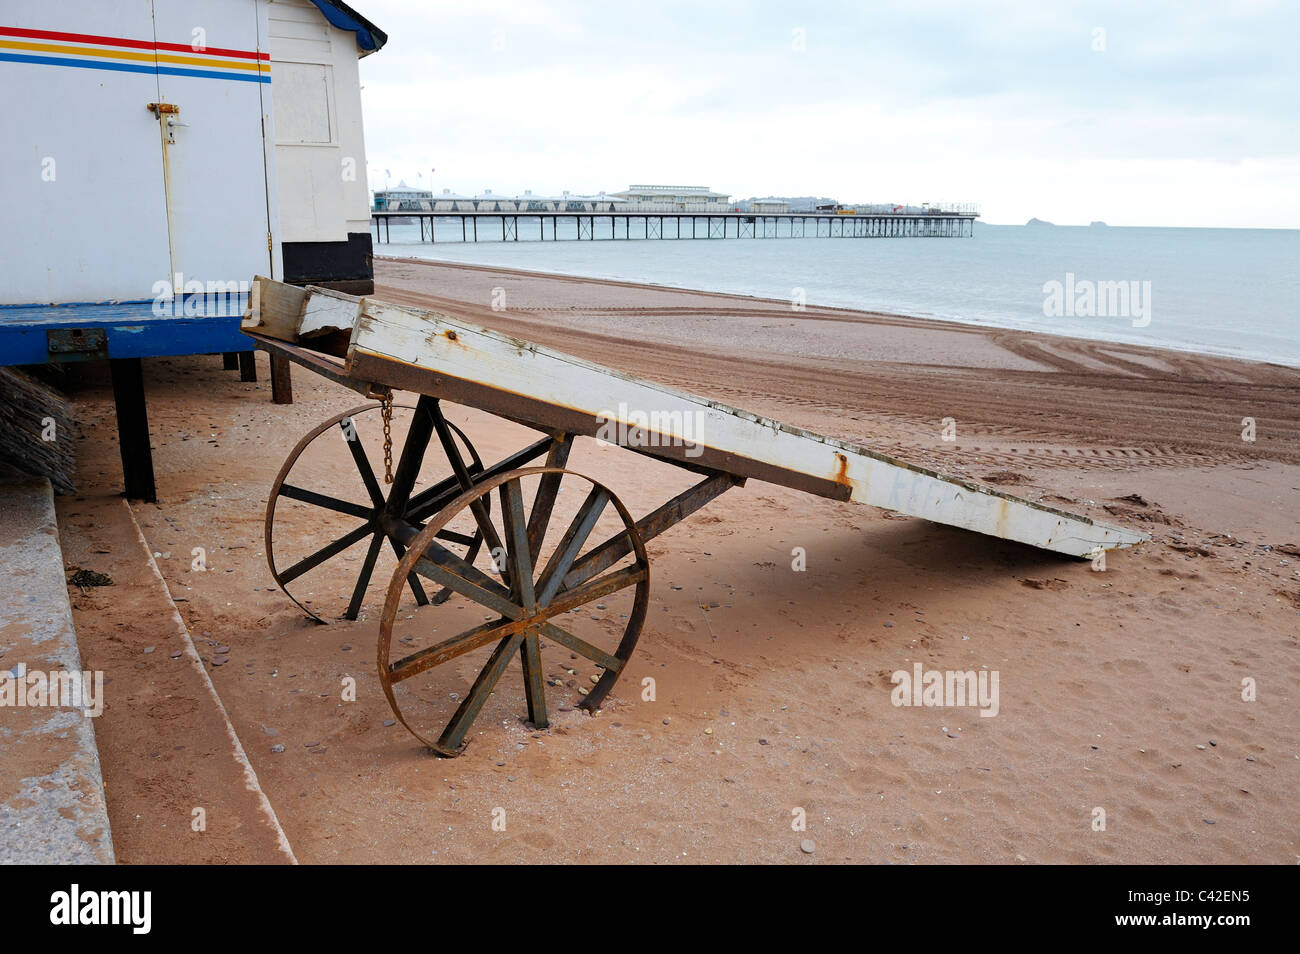 Ferry mobile jetée plage de paignton devon england uk Banque D'Images